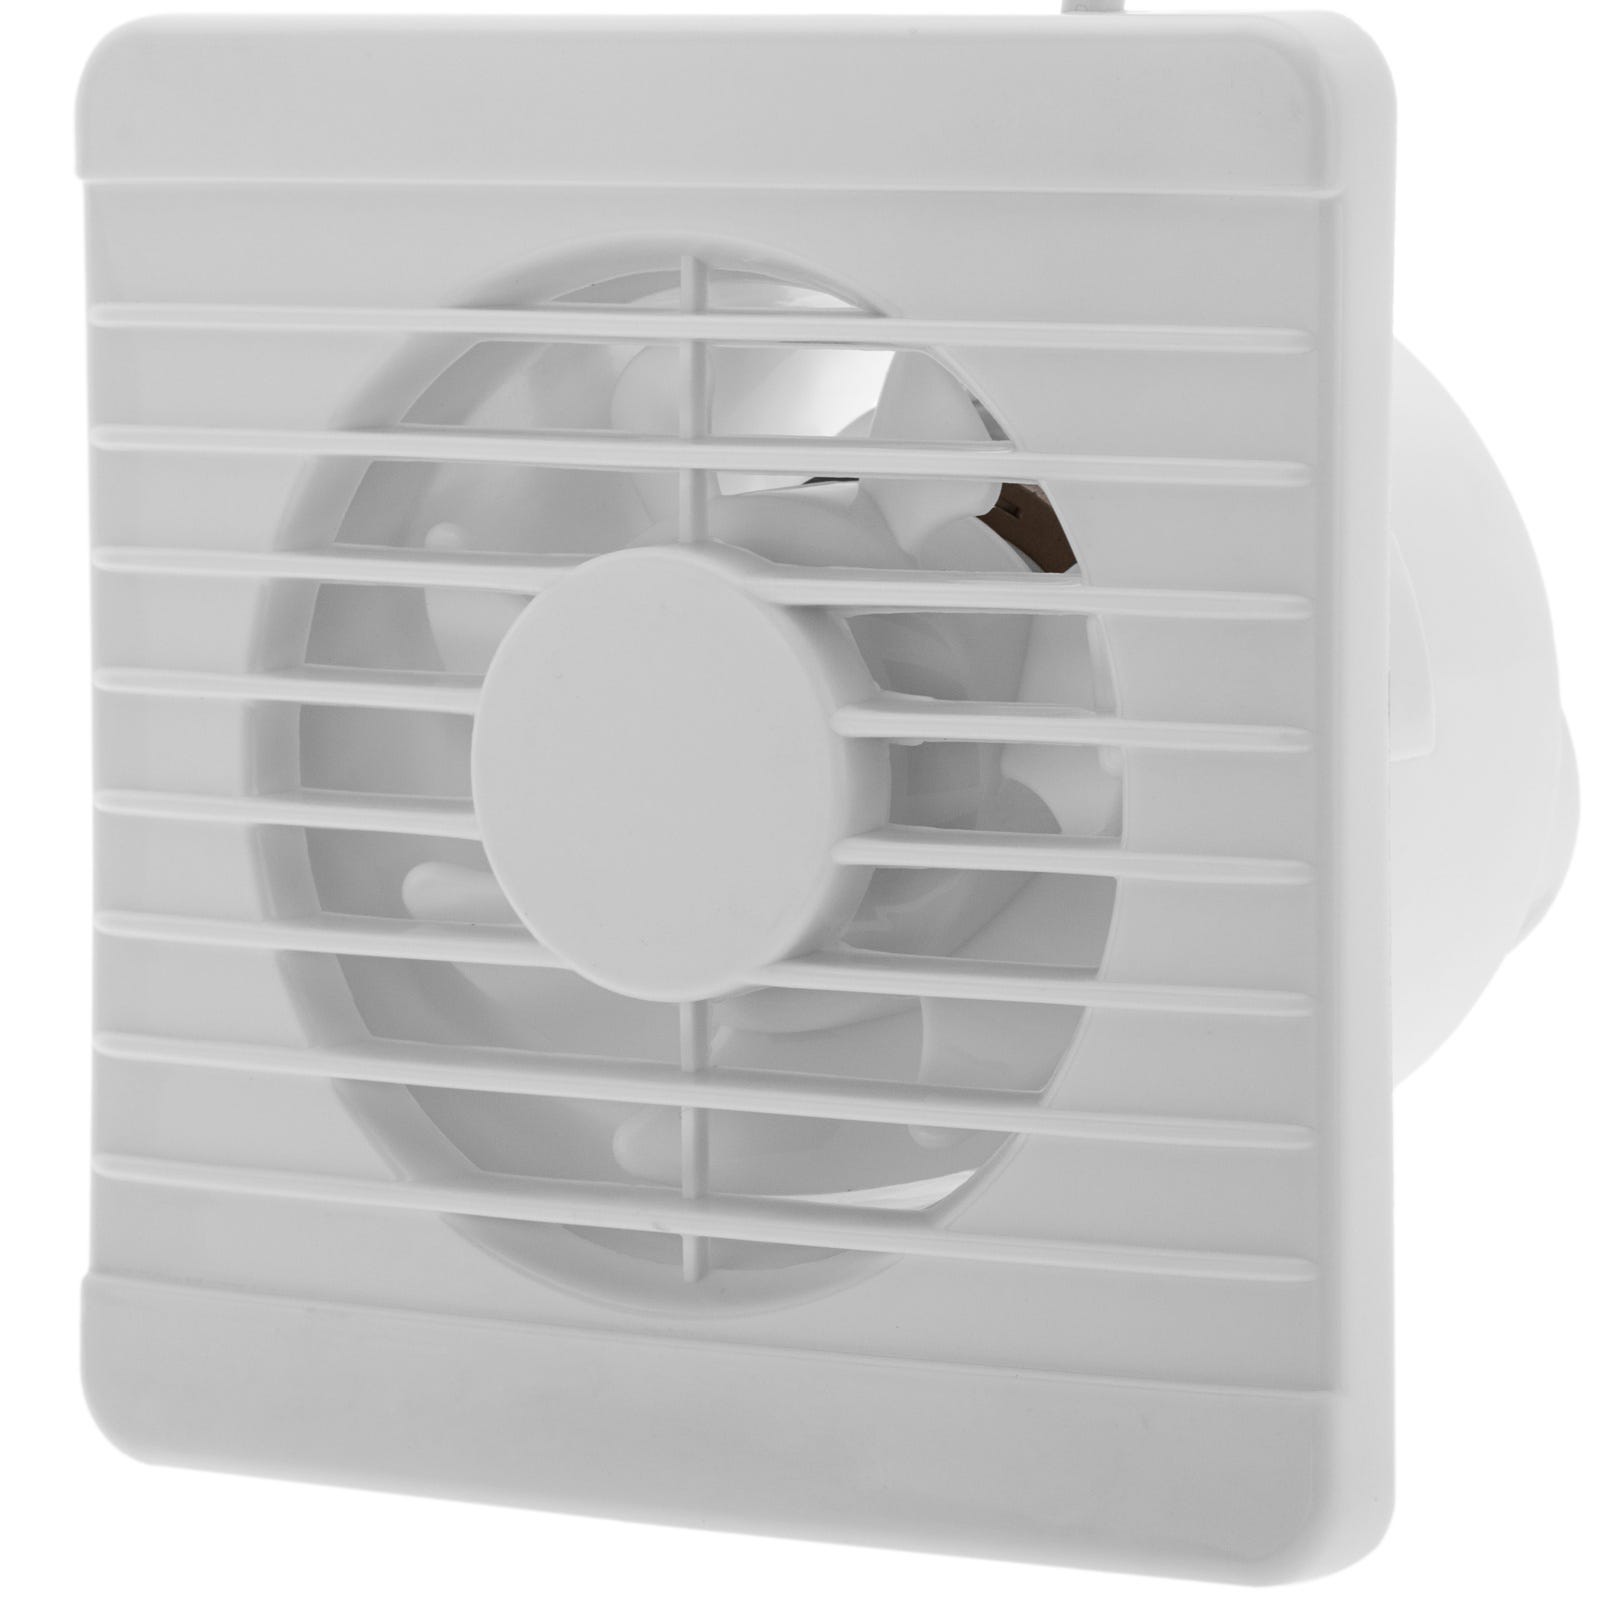 Extractor ventilador de aire para techo o pared 96 mm de diámetro, con  válvula antirretorno ventilación baño e interior